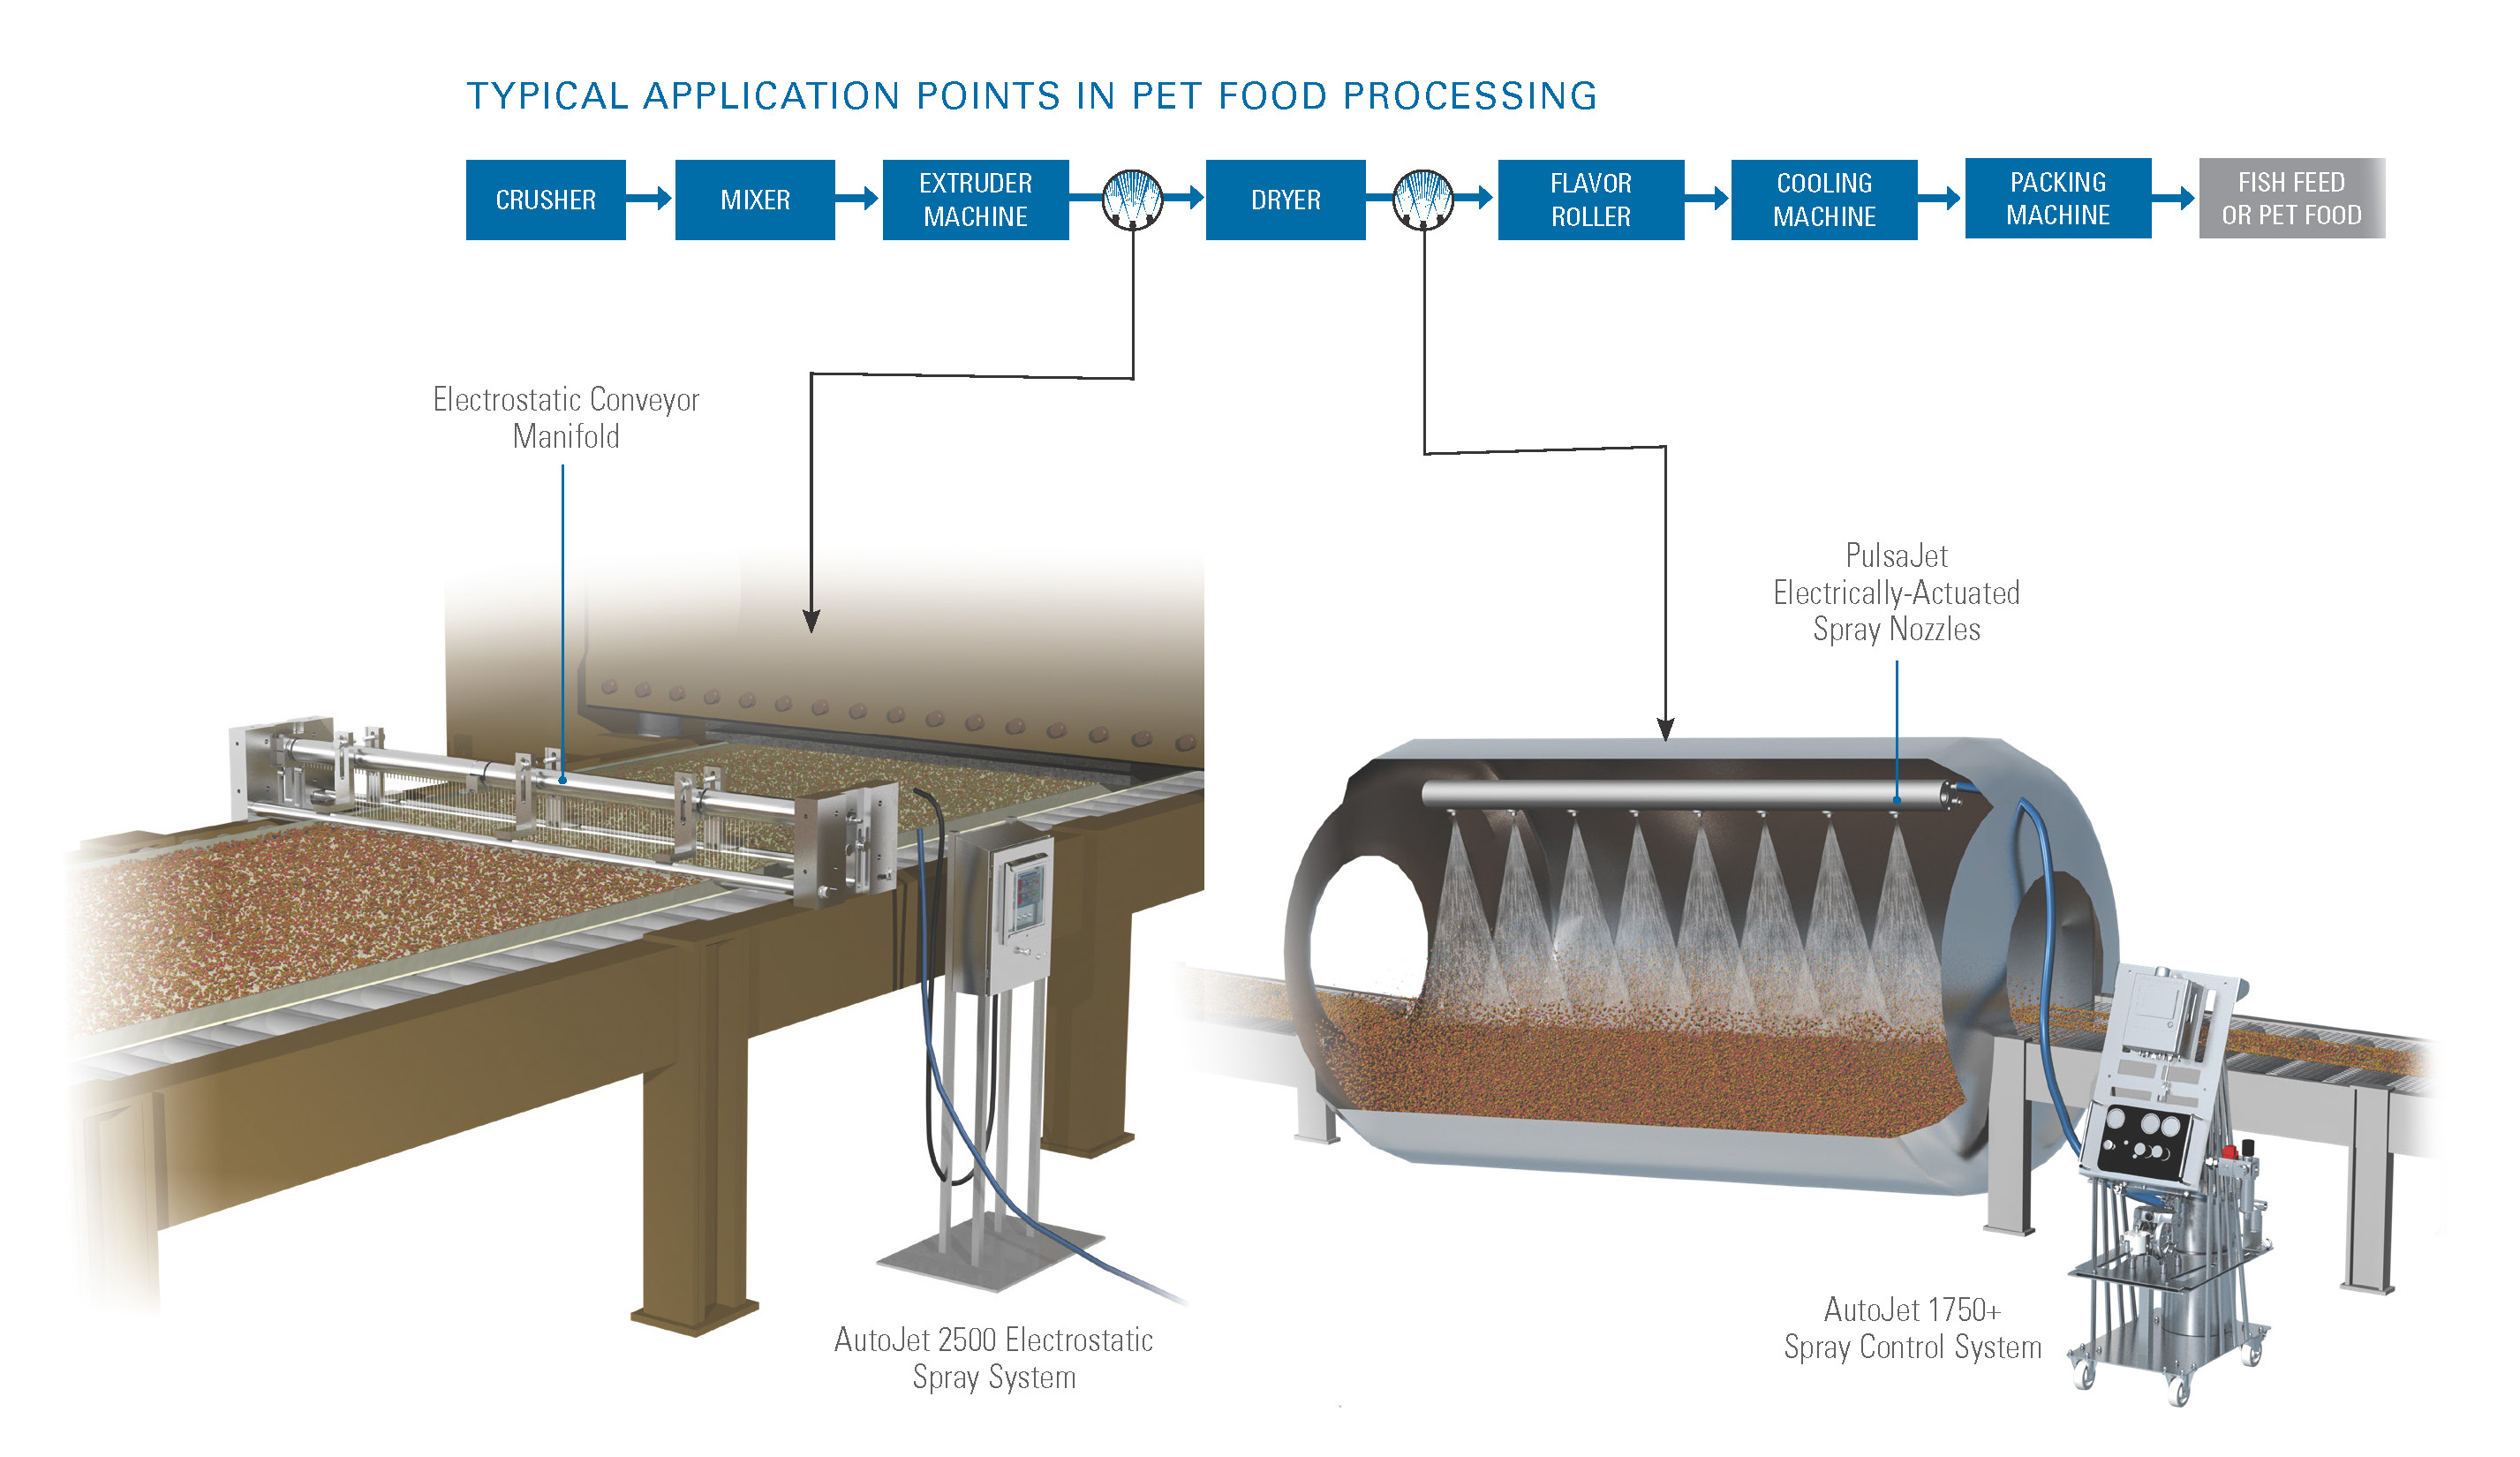 Sistemi di spruzzatura AutoJet utilizzati negli impianti di pet food